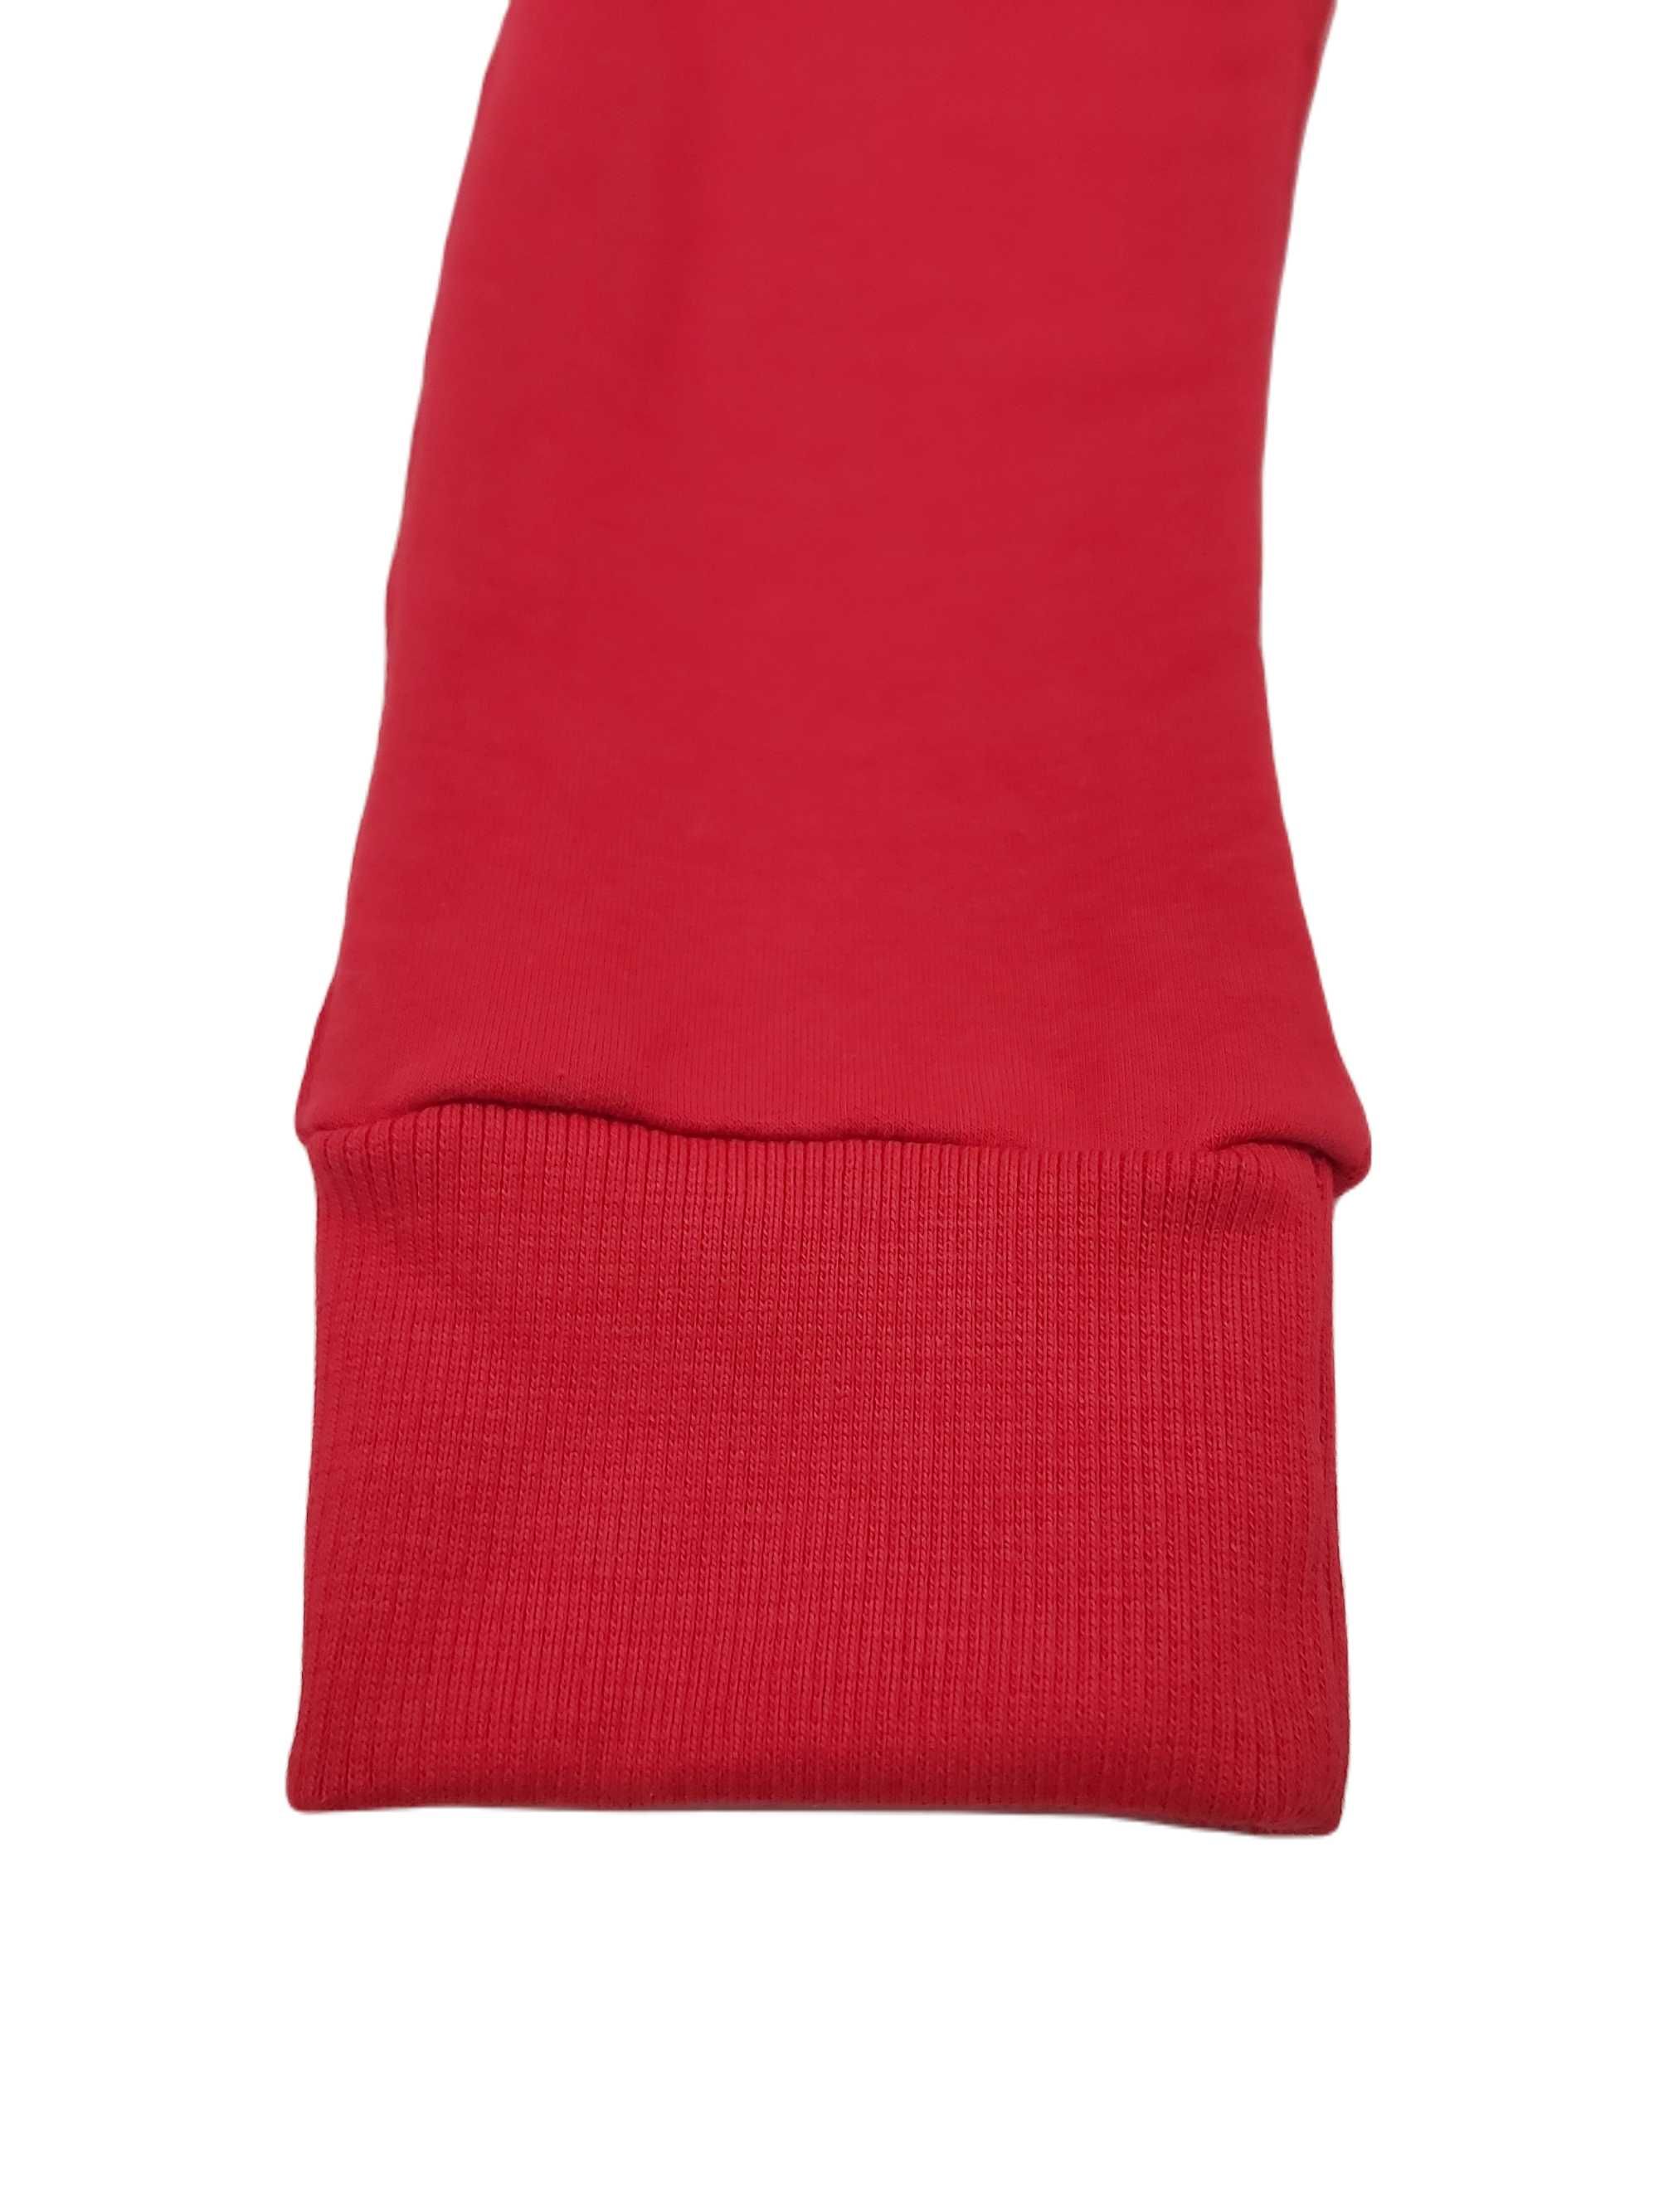 Spodnie dresowe czerwone 98 bawełna slim MROFI